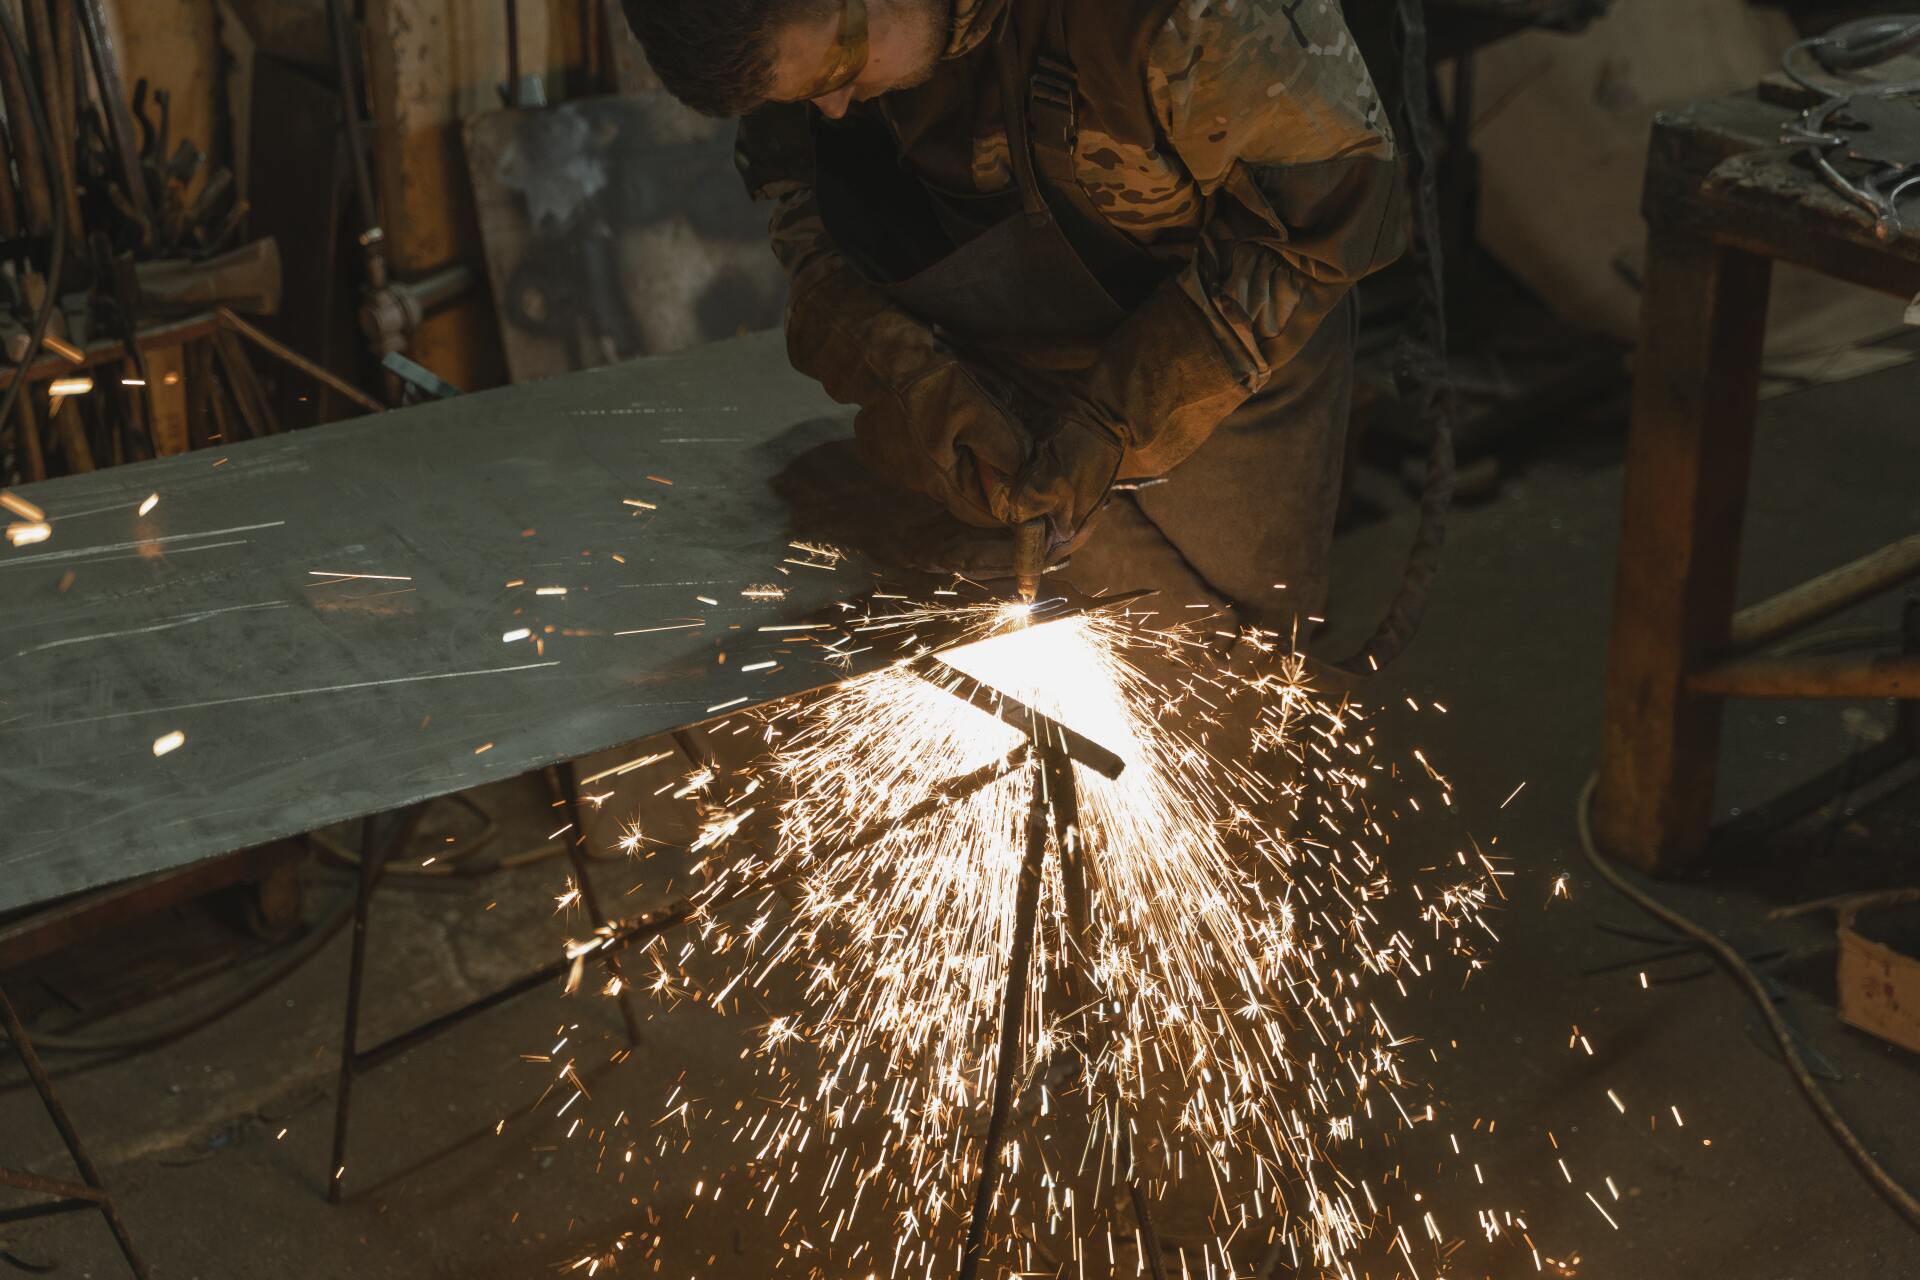 worker welding a piece of sheet metal